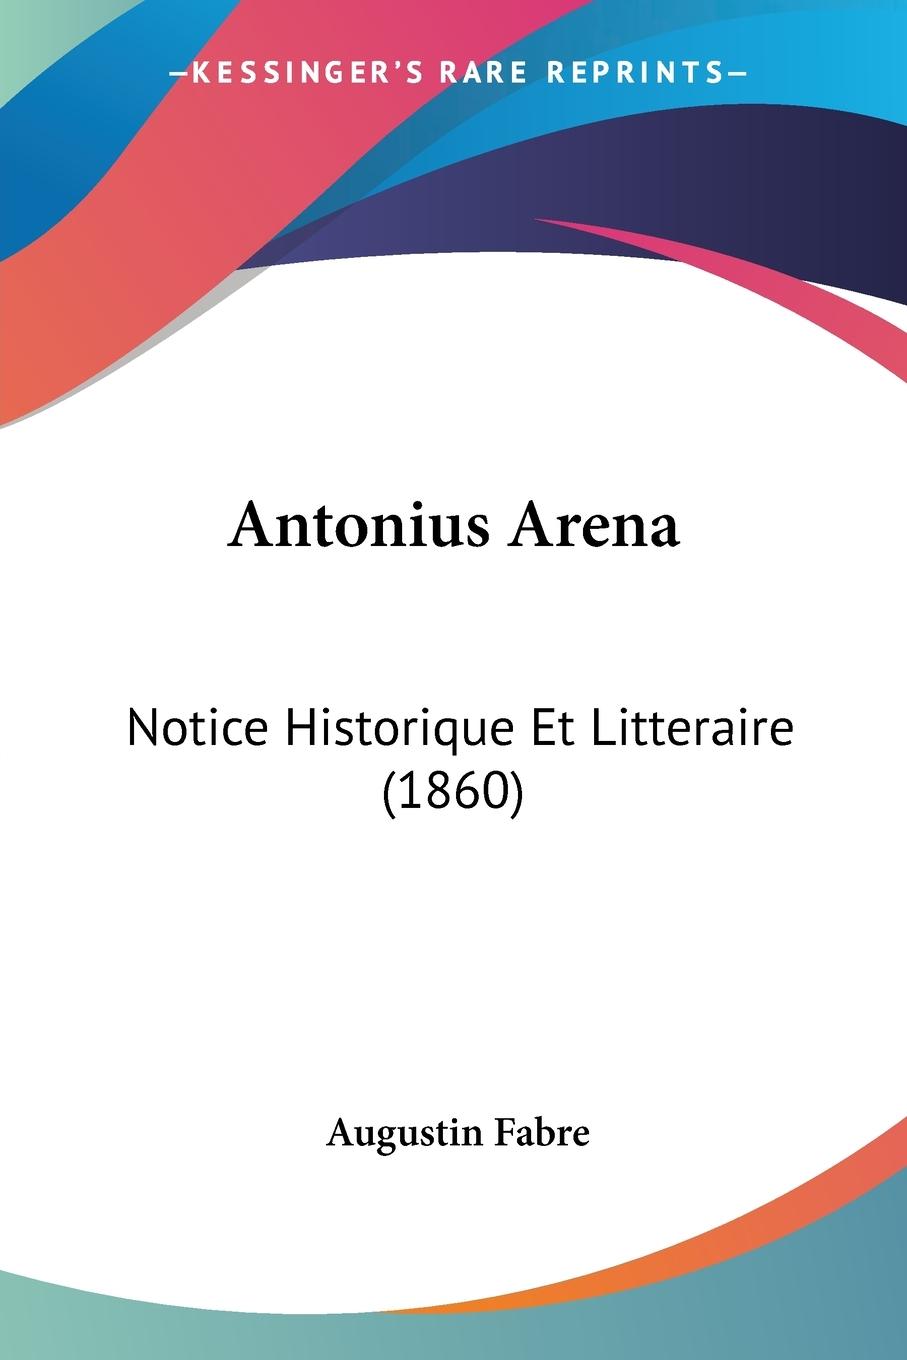 Antonius Arena - Fabre, Augustin